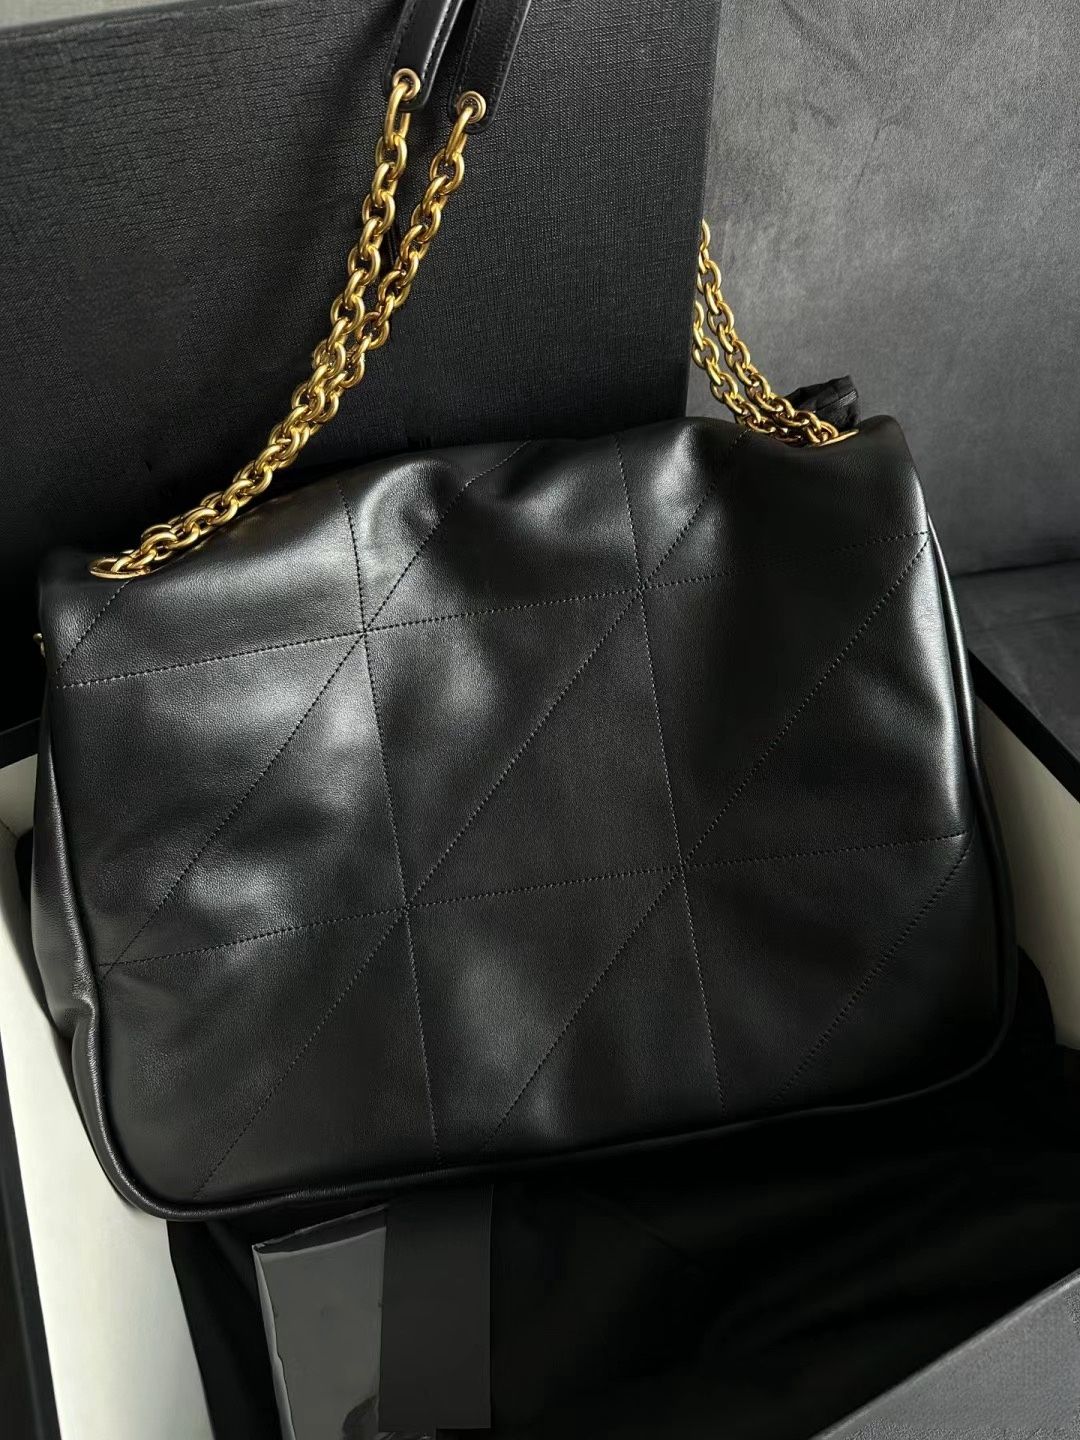 Dhgate Shoulder Bags Luxurys Women Chain Strap Crossbody Purse